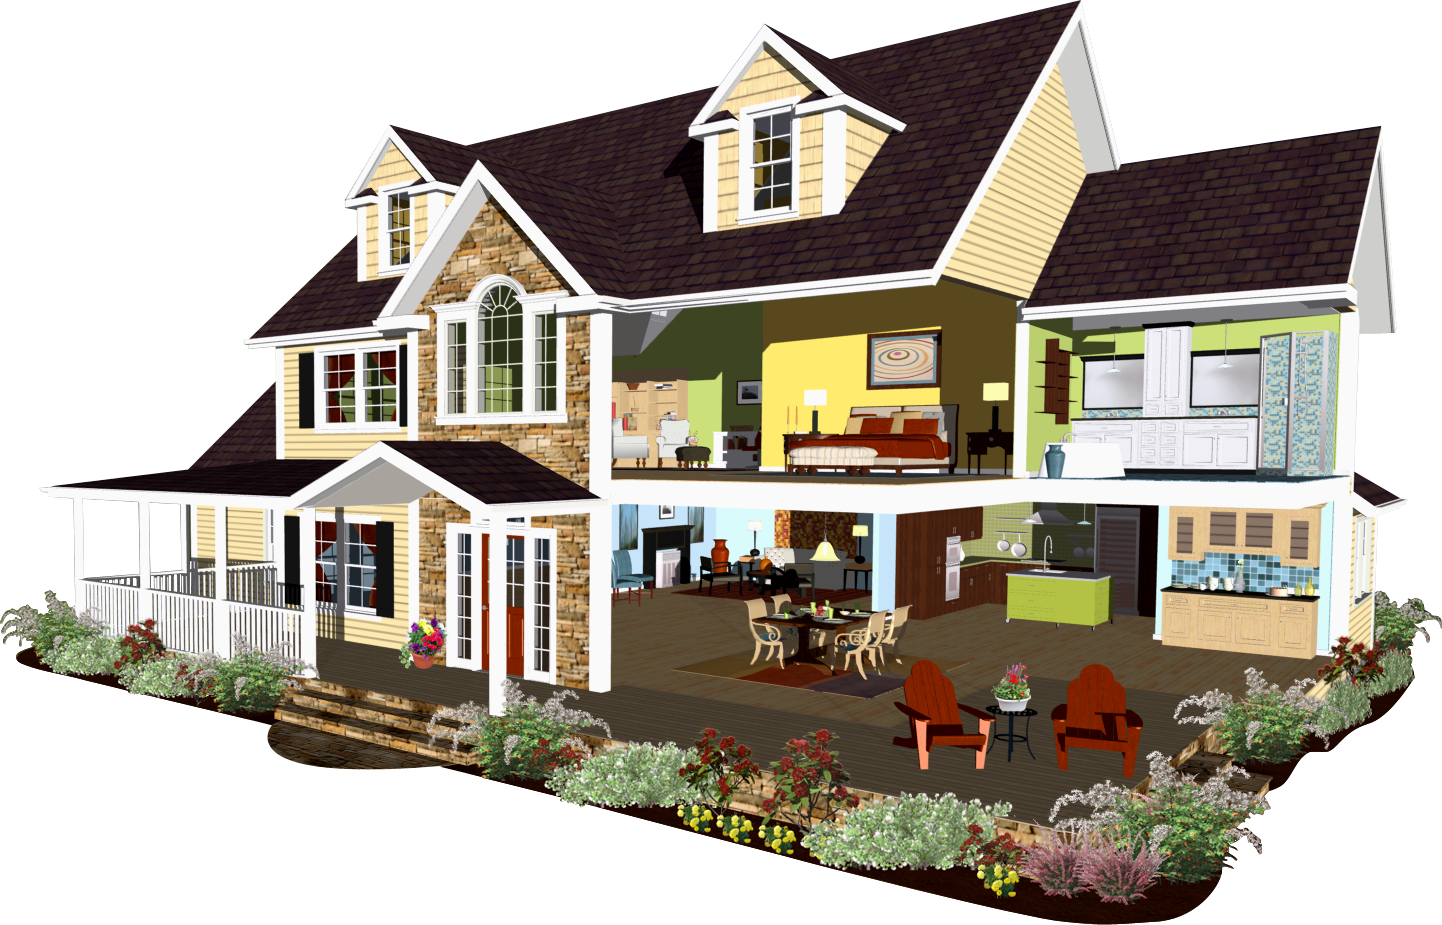 6 Kbytes - Home Design Plans Apps (1442x925)